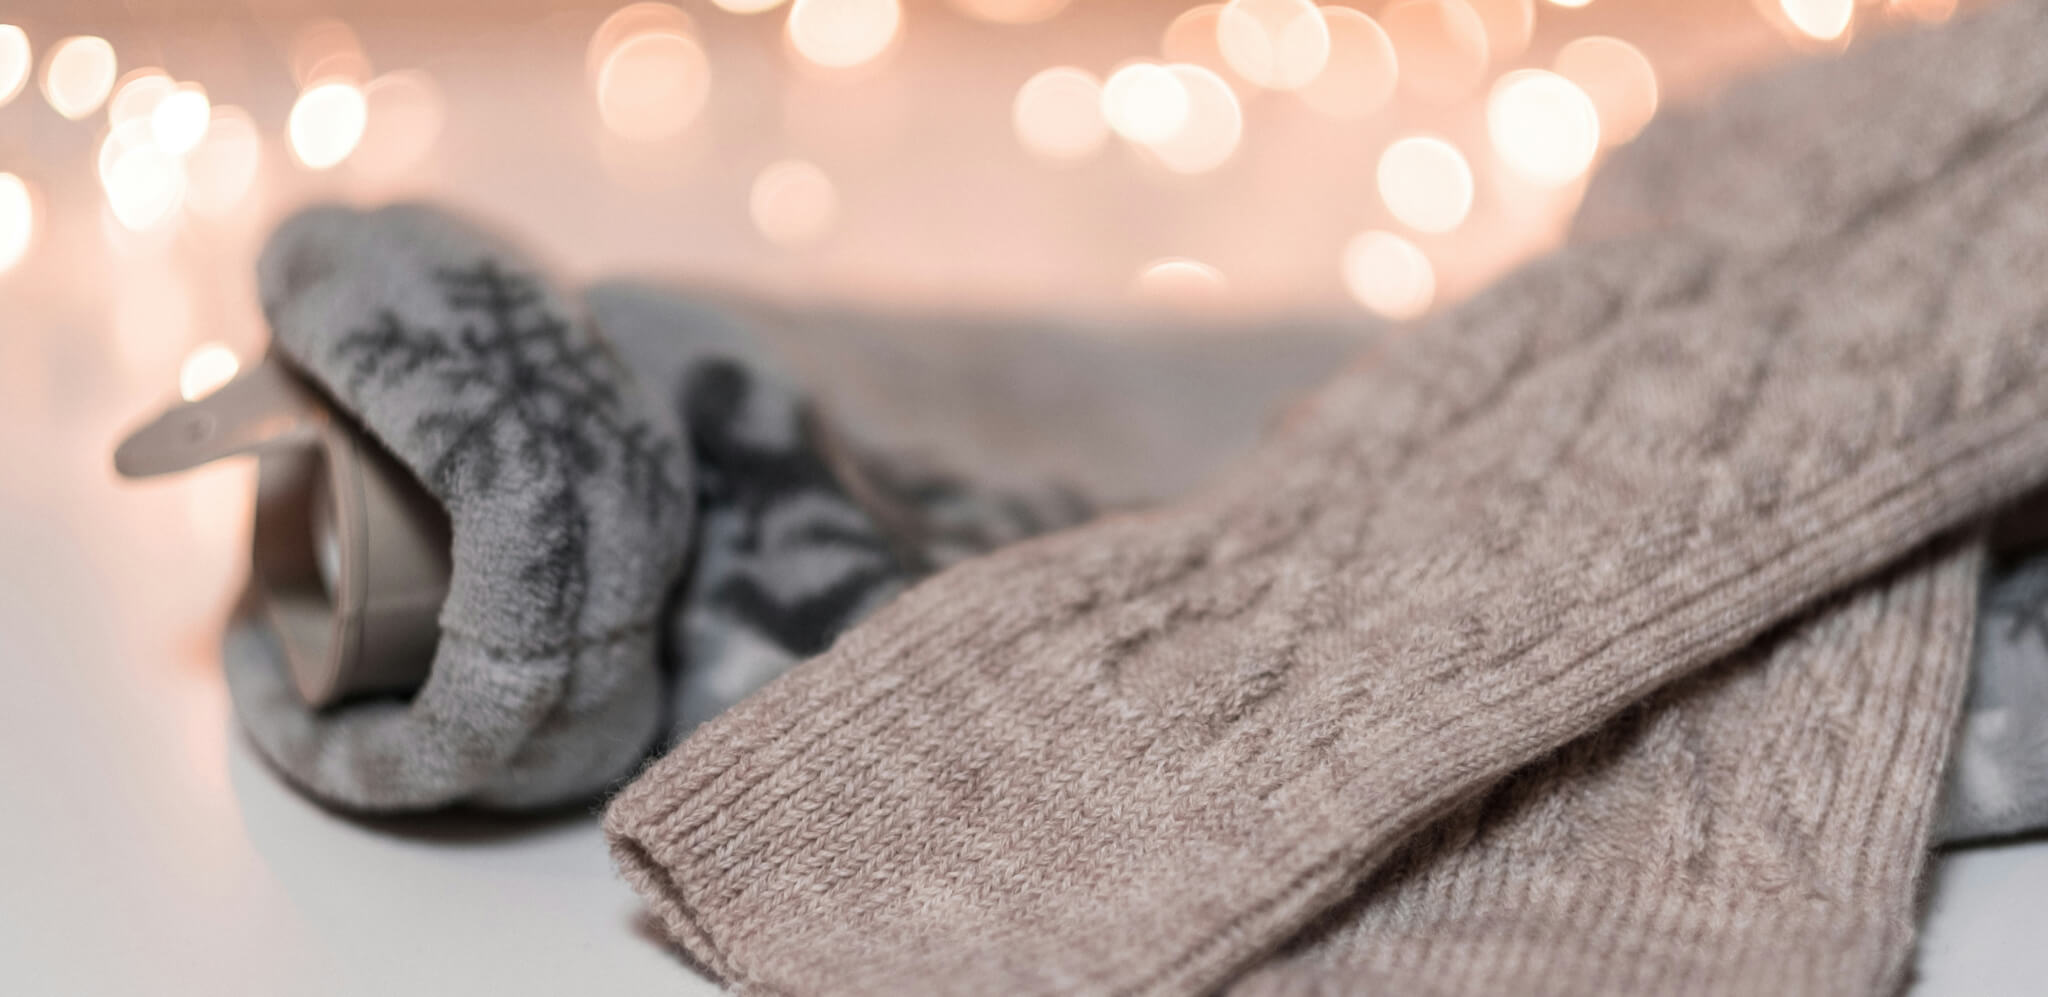 Kuschelige Alpaka Socken für den Winter schön gelegt mit Licht im Hintergrund